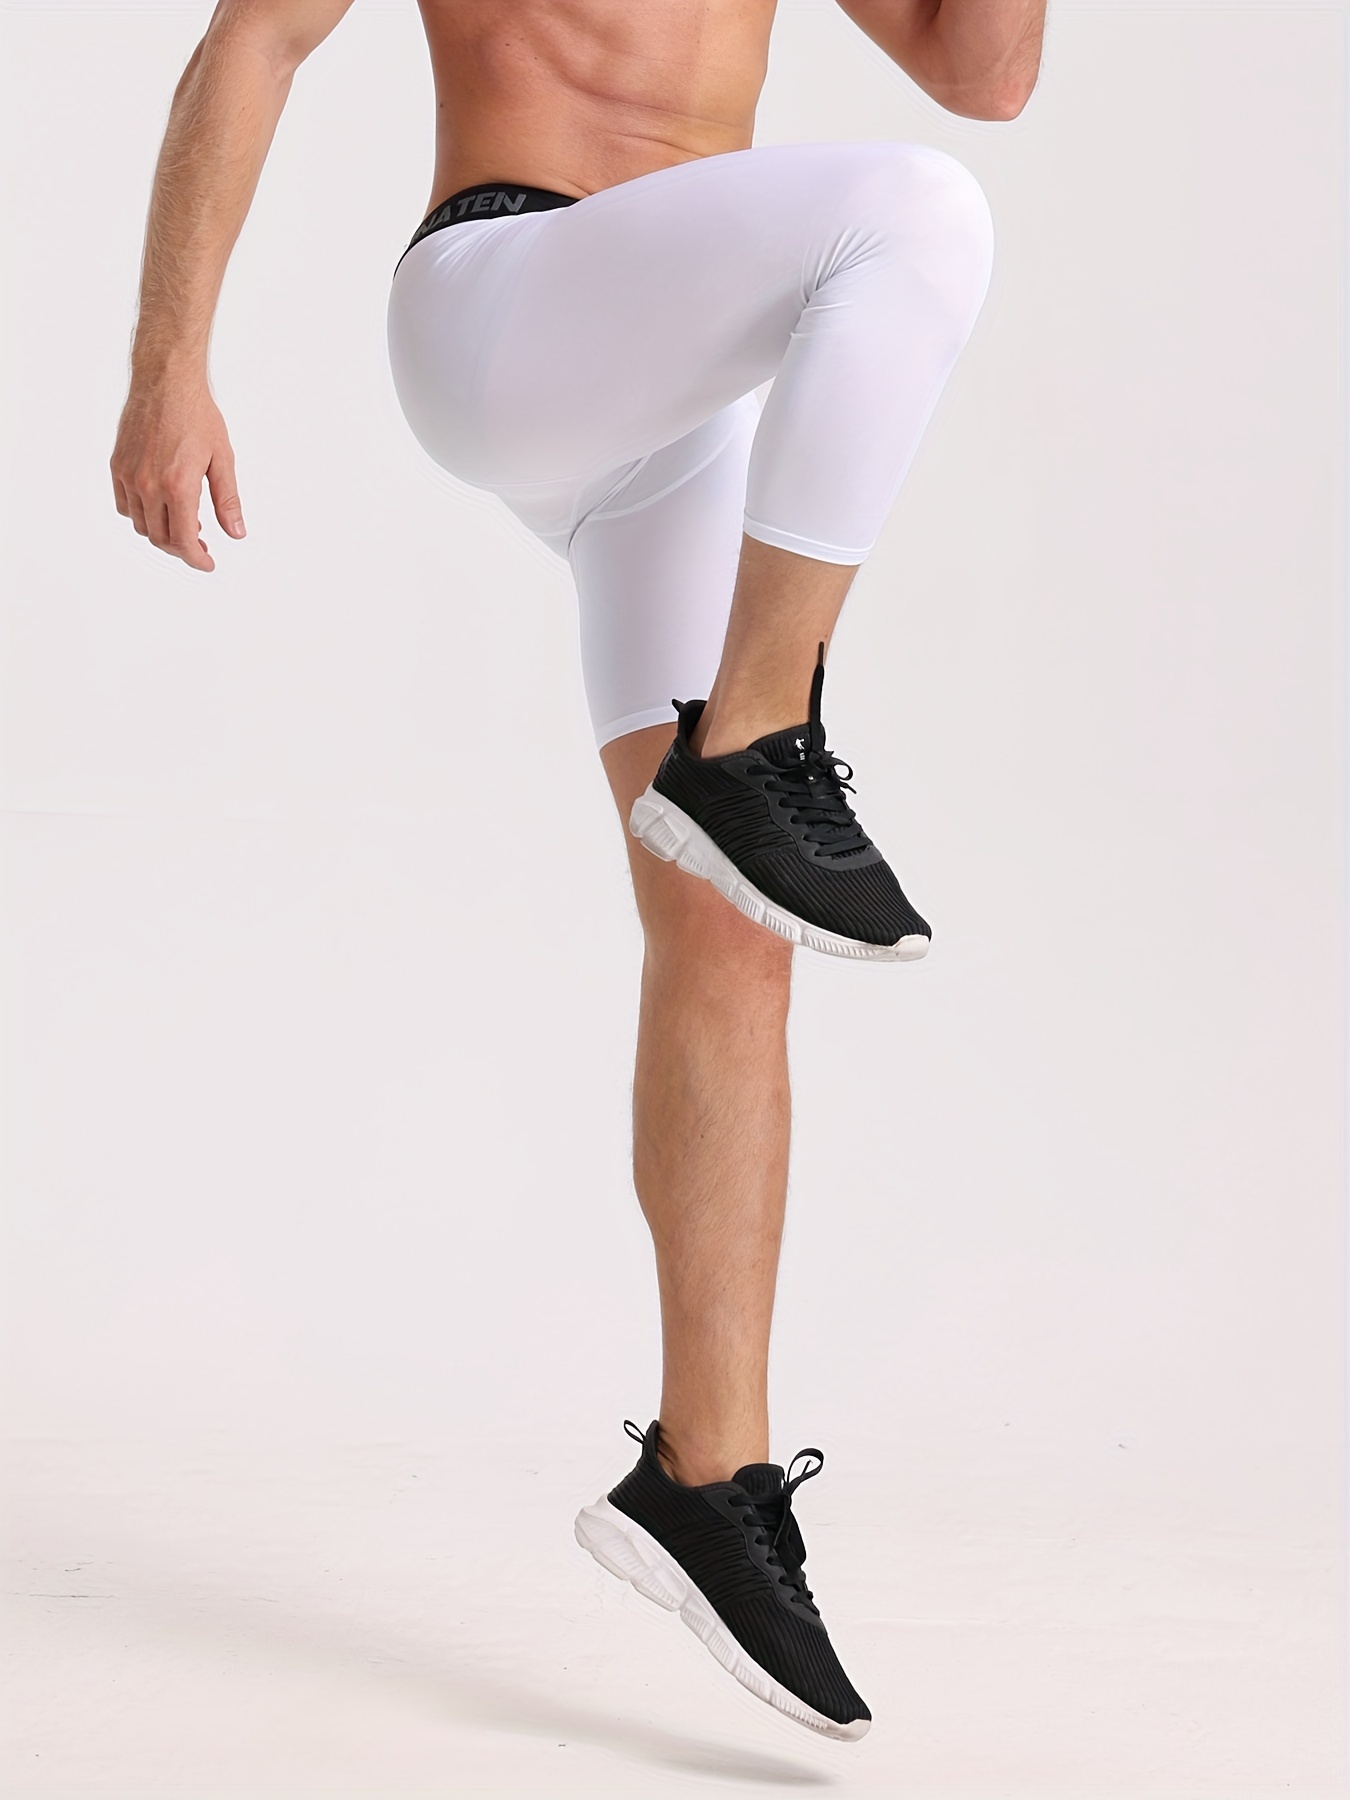 Pantalones De Compresión Para Mujer Nike S Leggings De